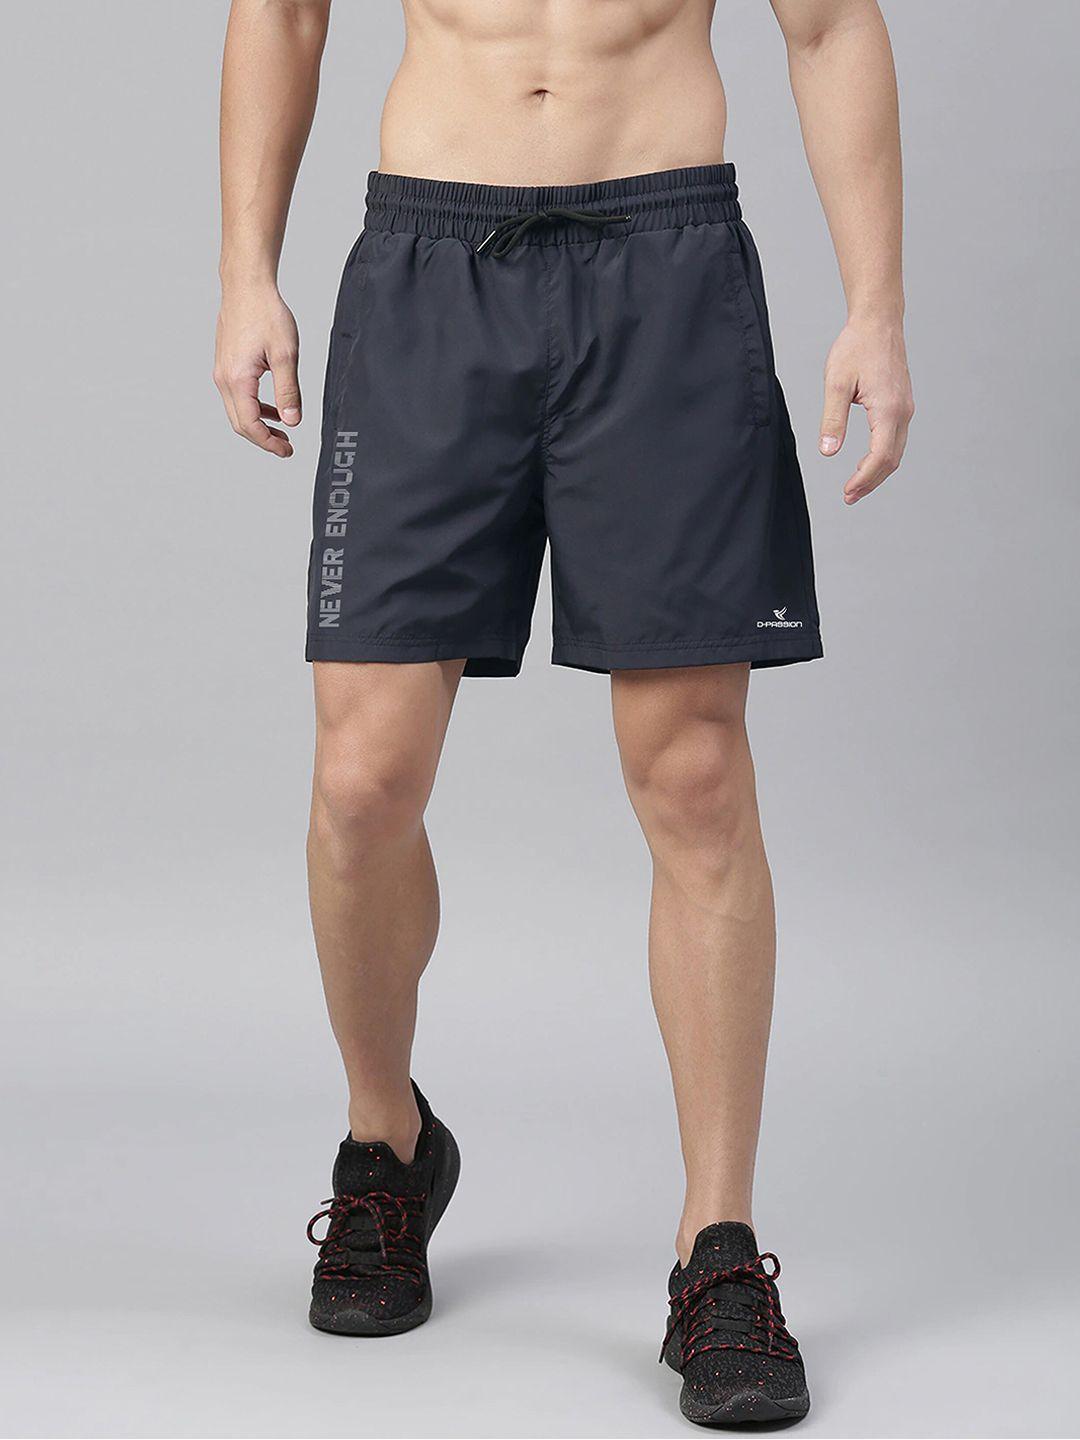 dpassion-men-navy-blue-running-sports-shorts